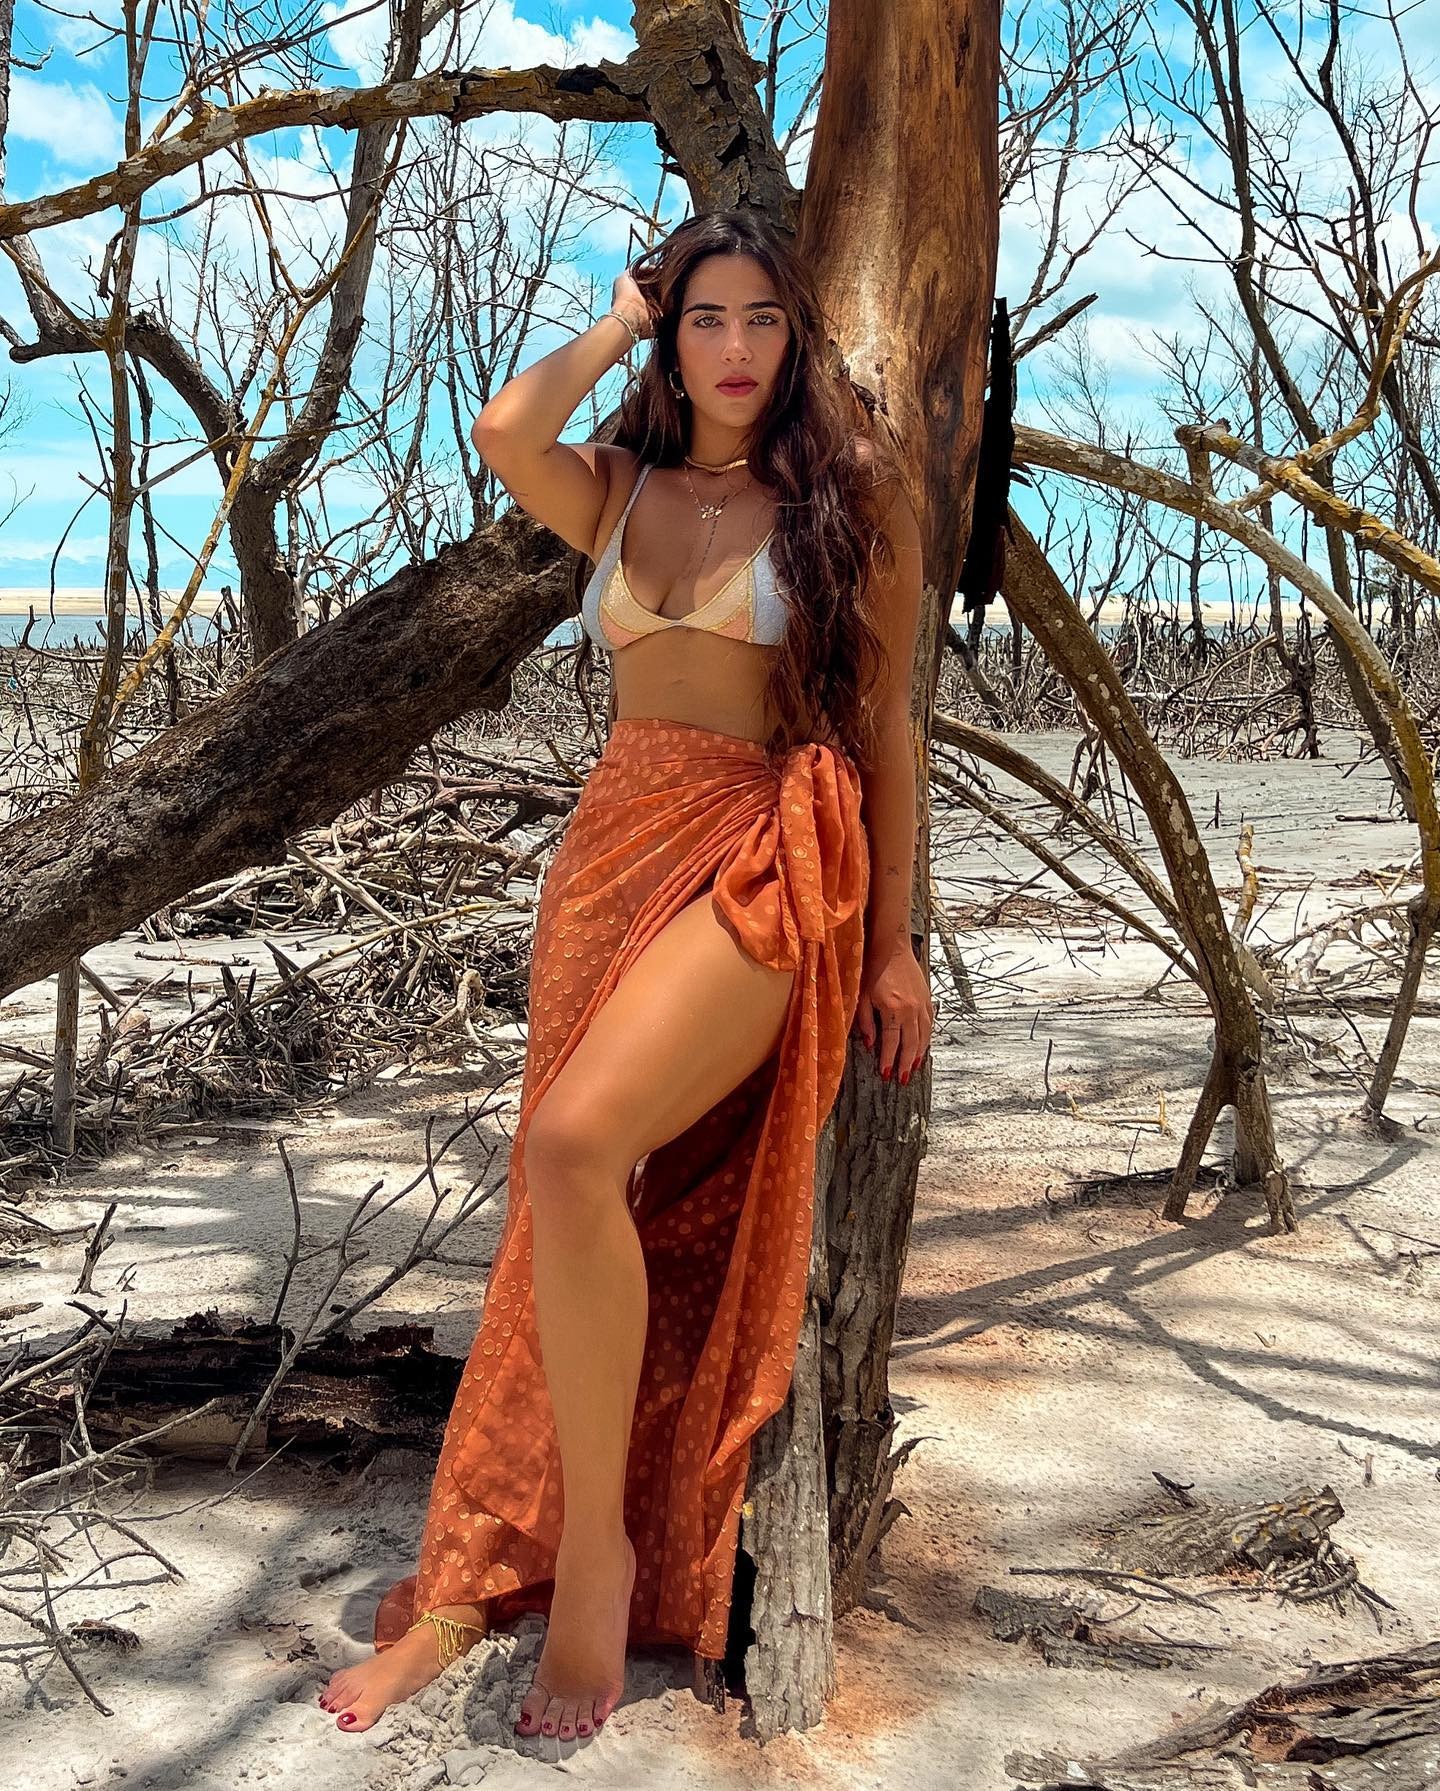 Jessica Beatriz Costa sobre fotos na praia: 'Me achando mto gata' (Foto: reprodução/instagram)